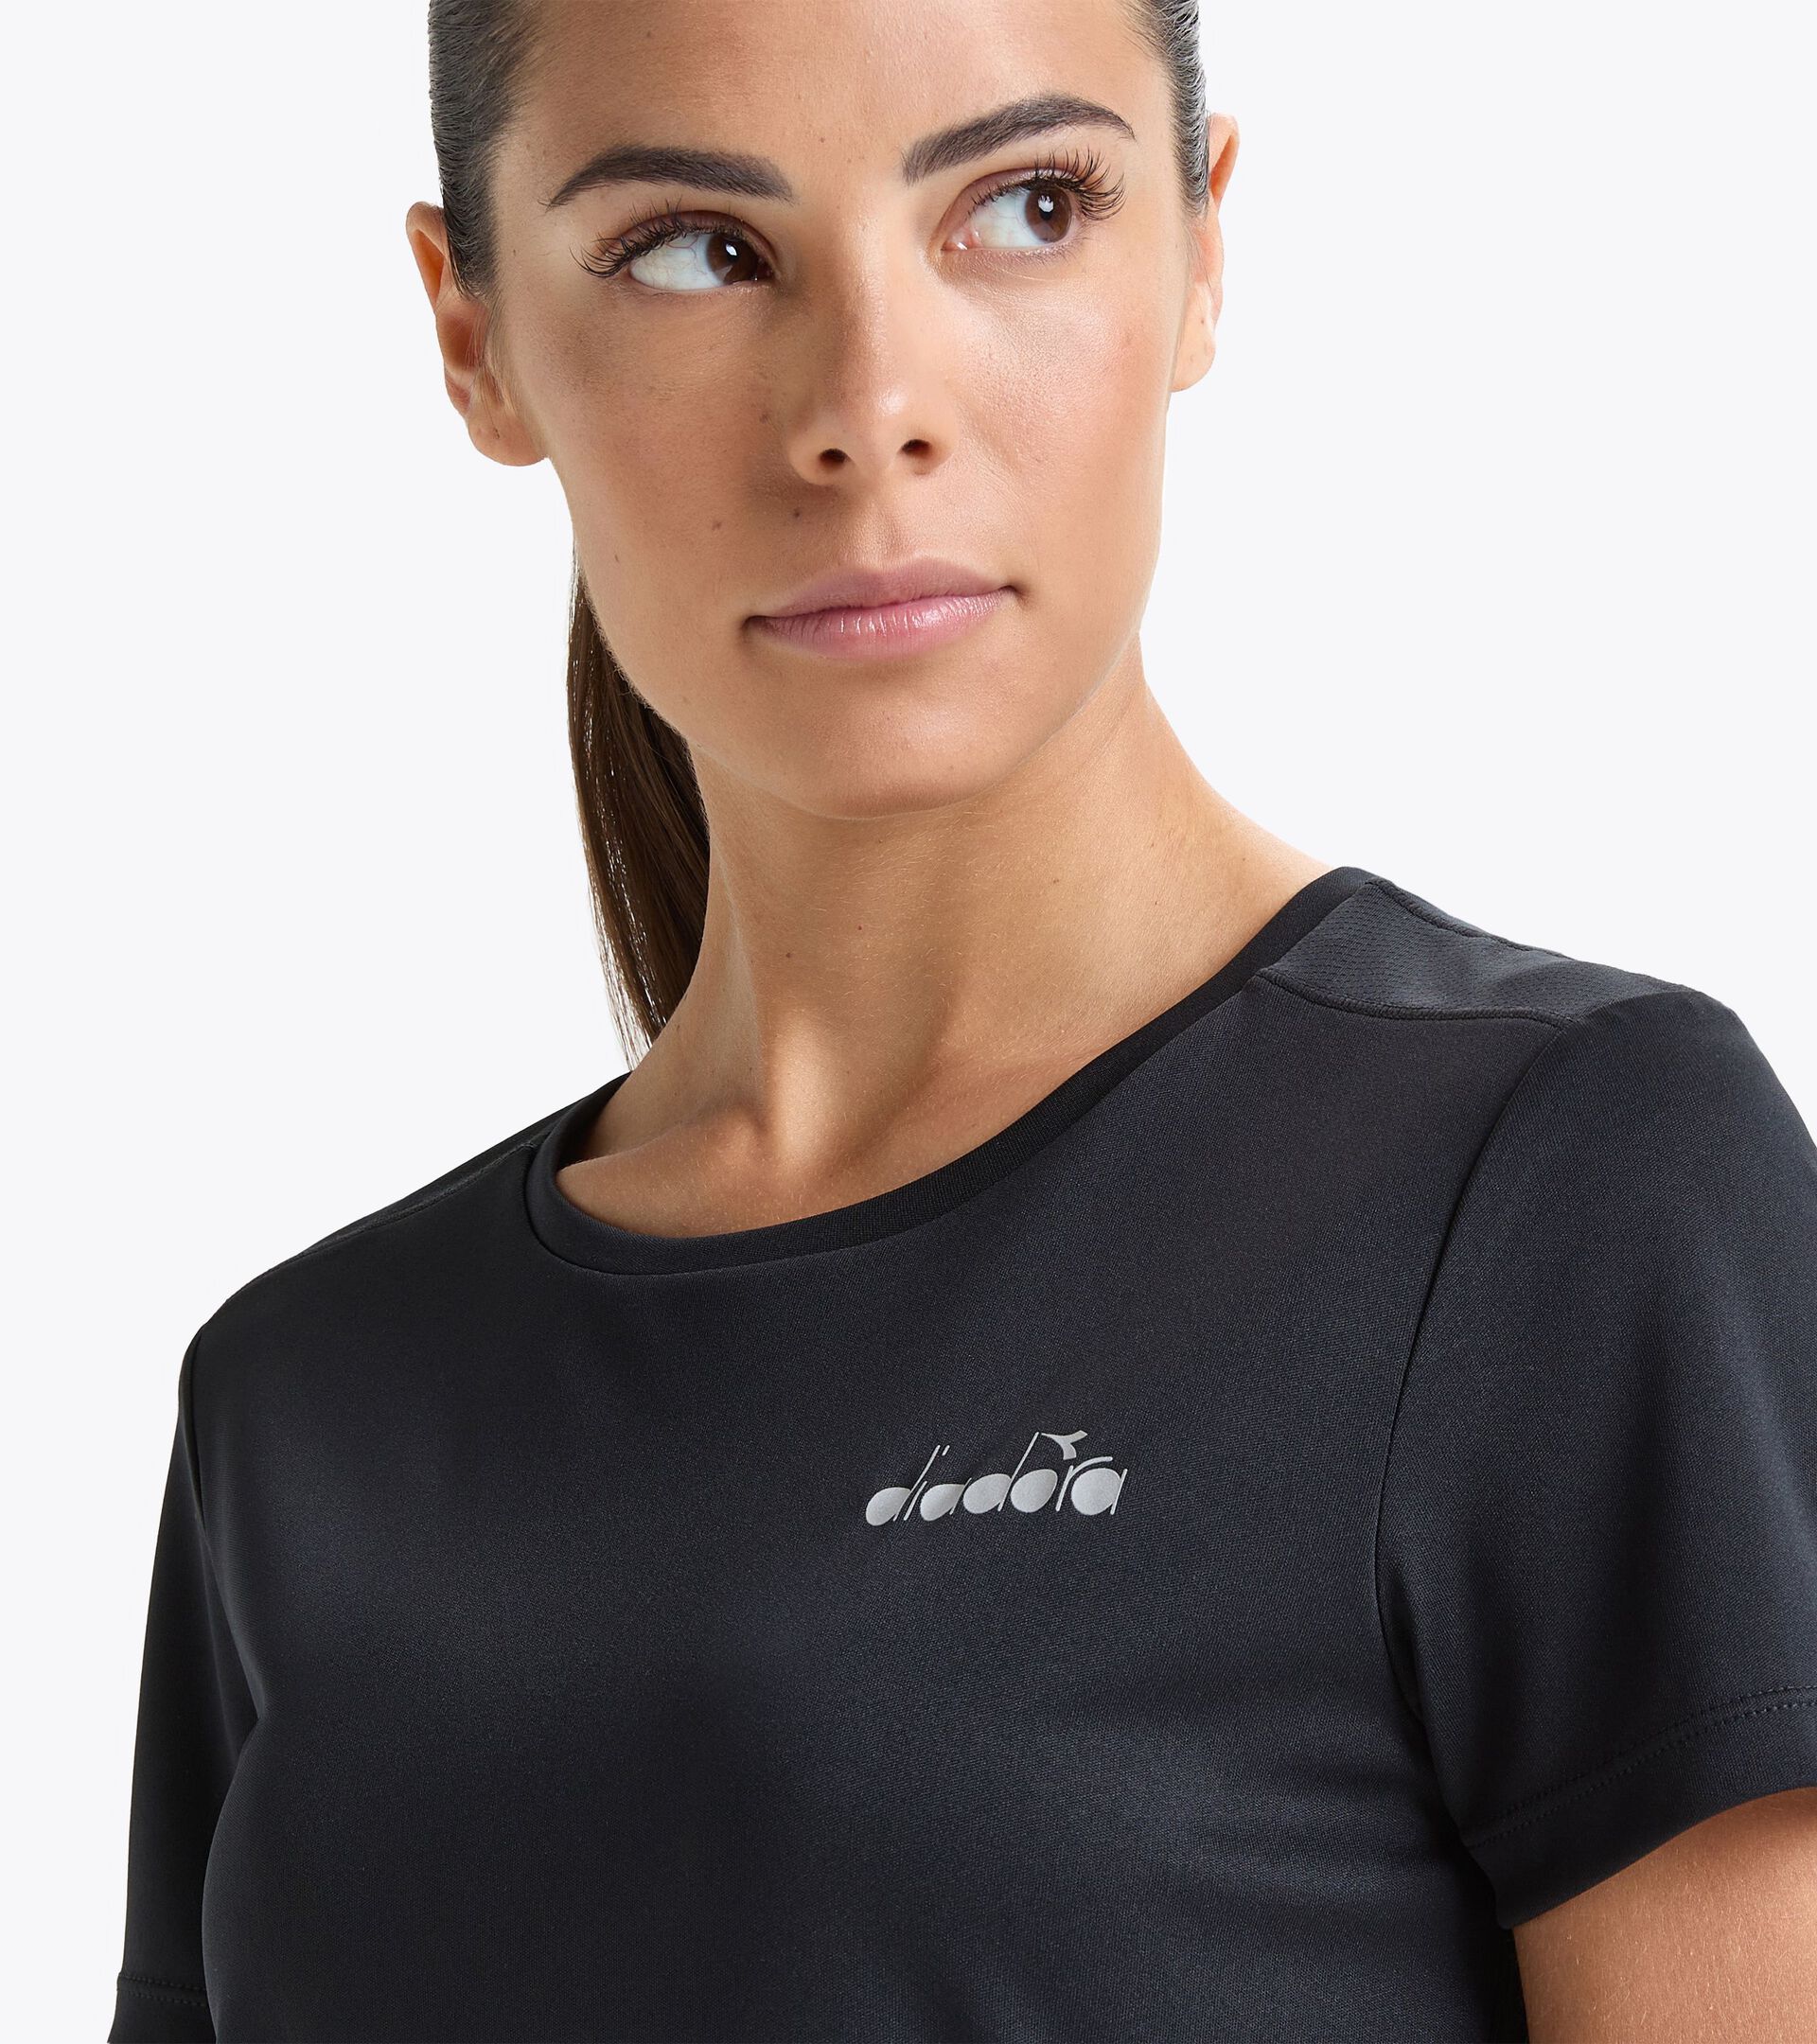 L. SS T-SHIRT RUN Running Online Store - Diadora - t-shirt GR Women